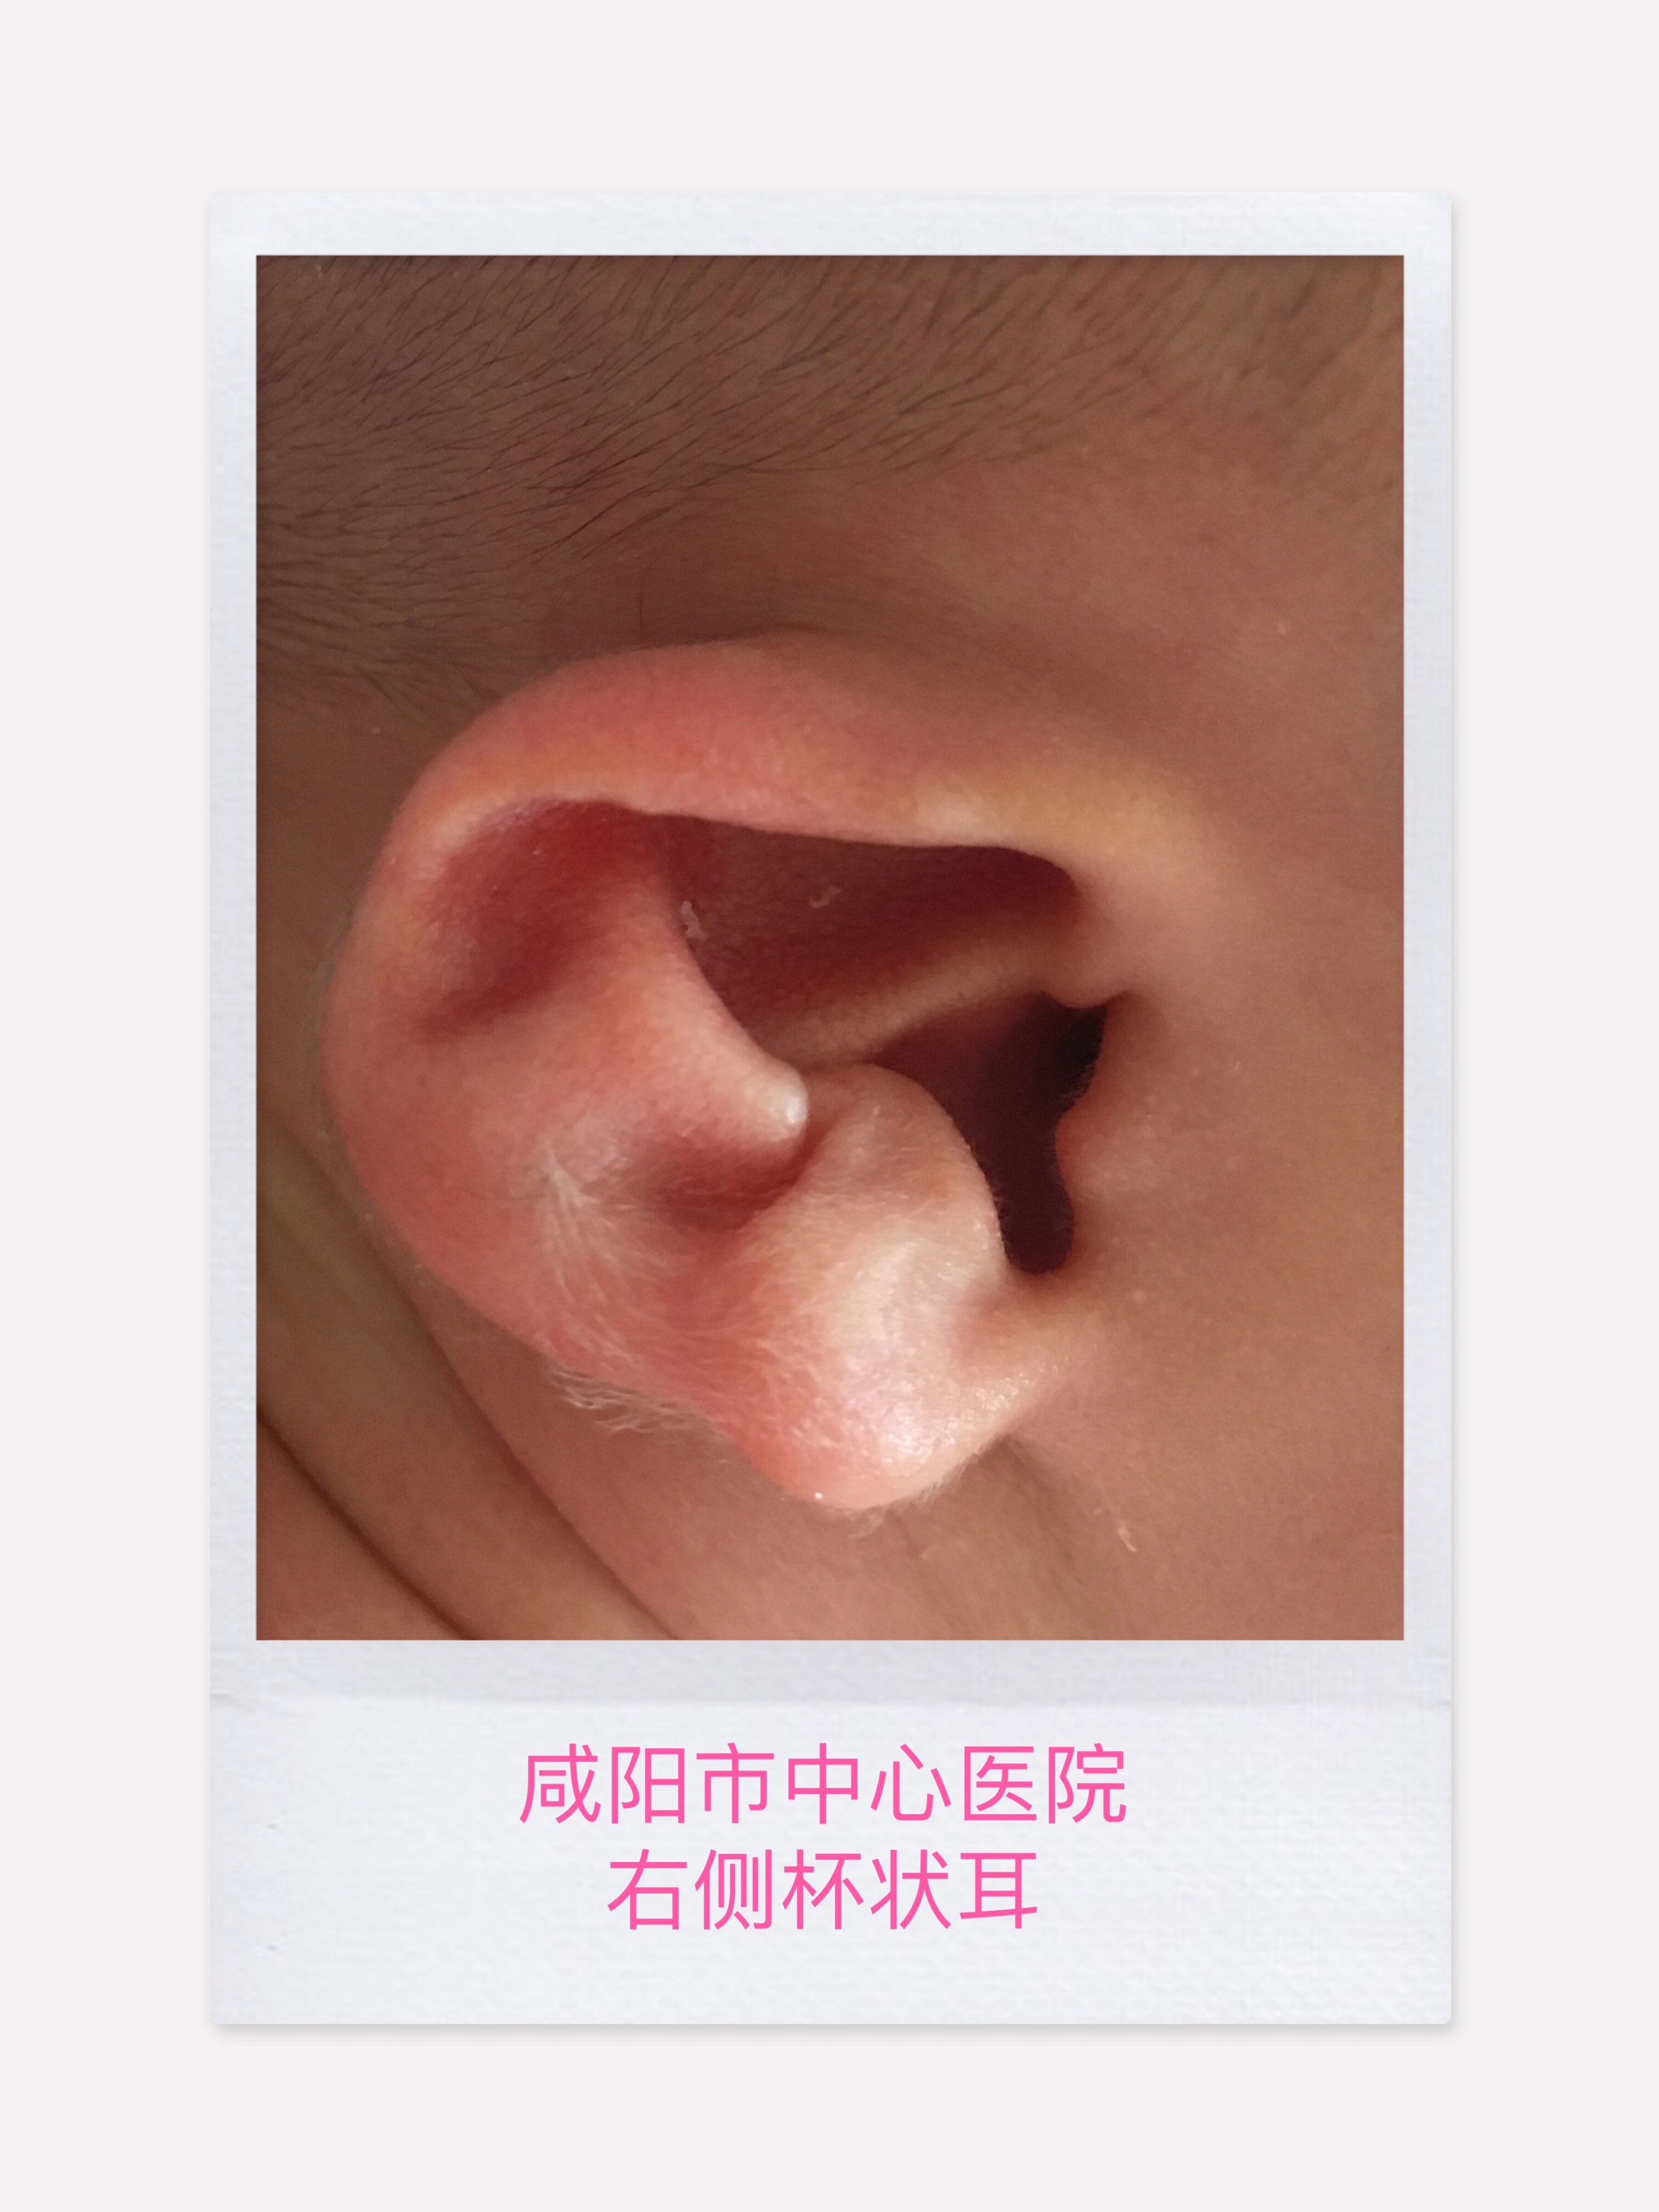 二是结构畸形:即胚胎发育早期耳部皮肤及软骨发育不全导致的外耳畸形